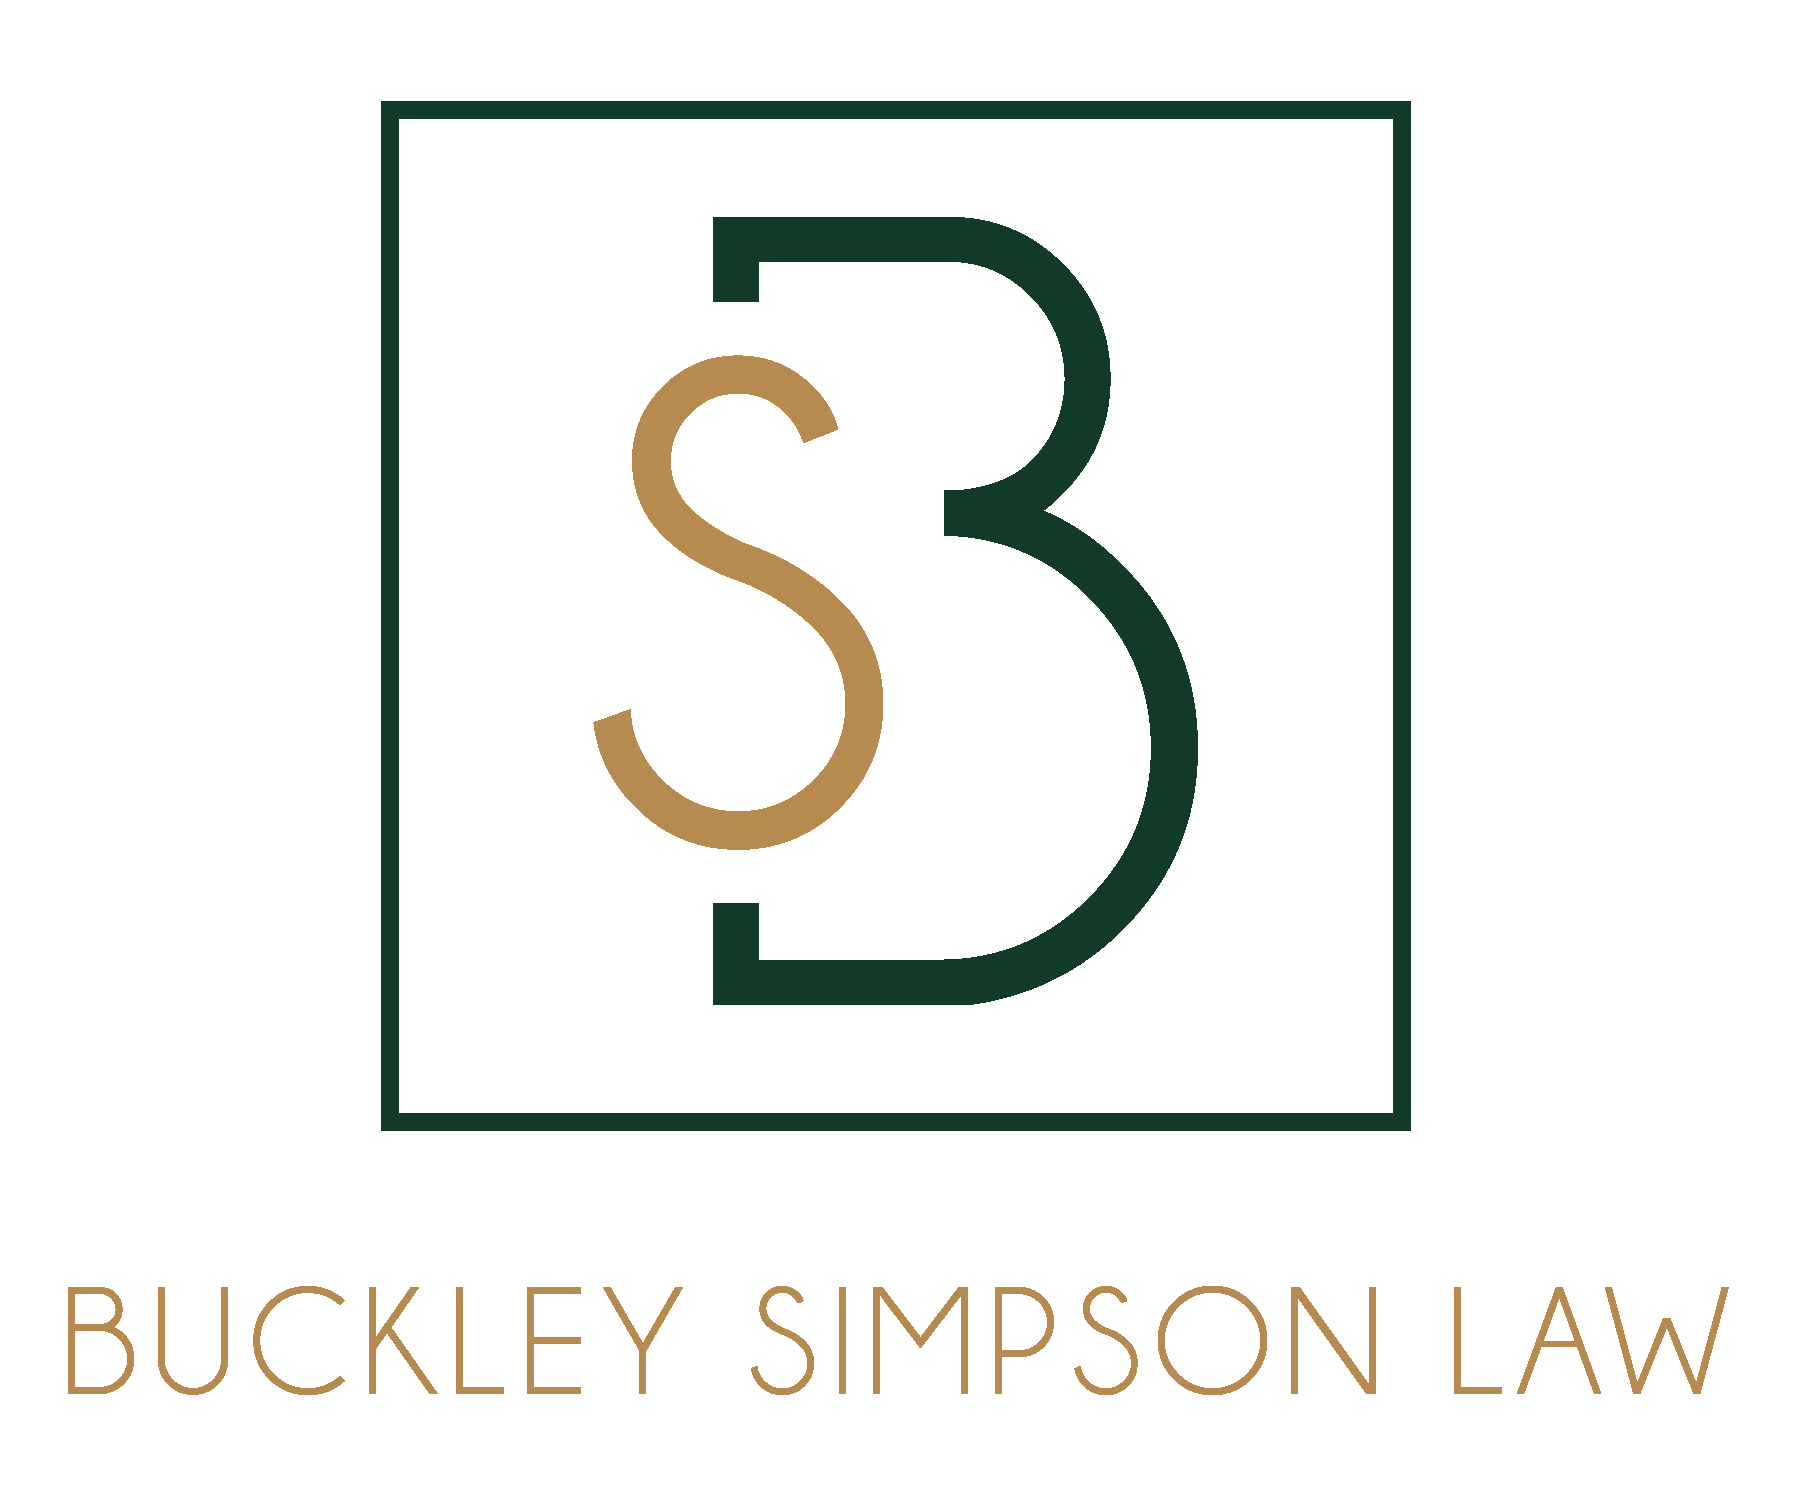 Buckley Simpson Law, Lakewood, Colorado